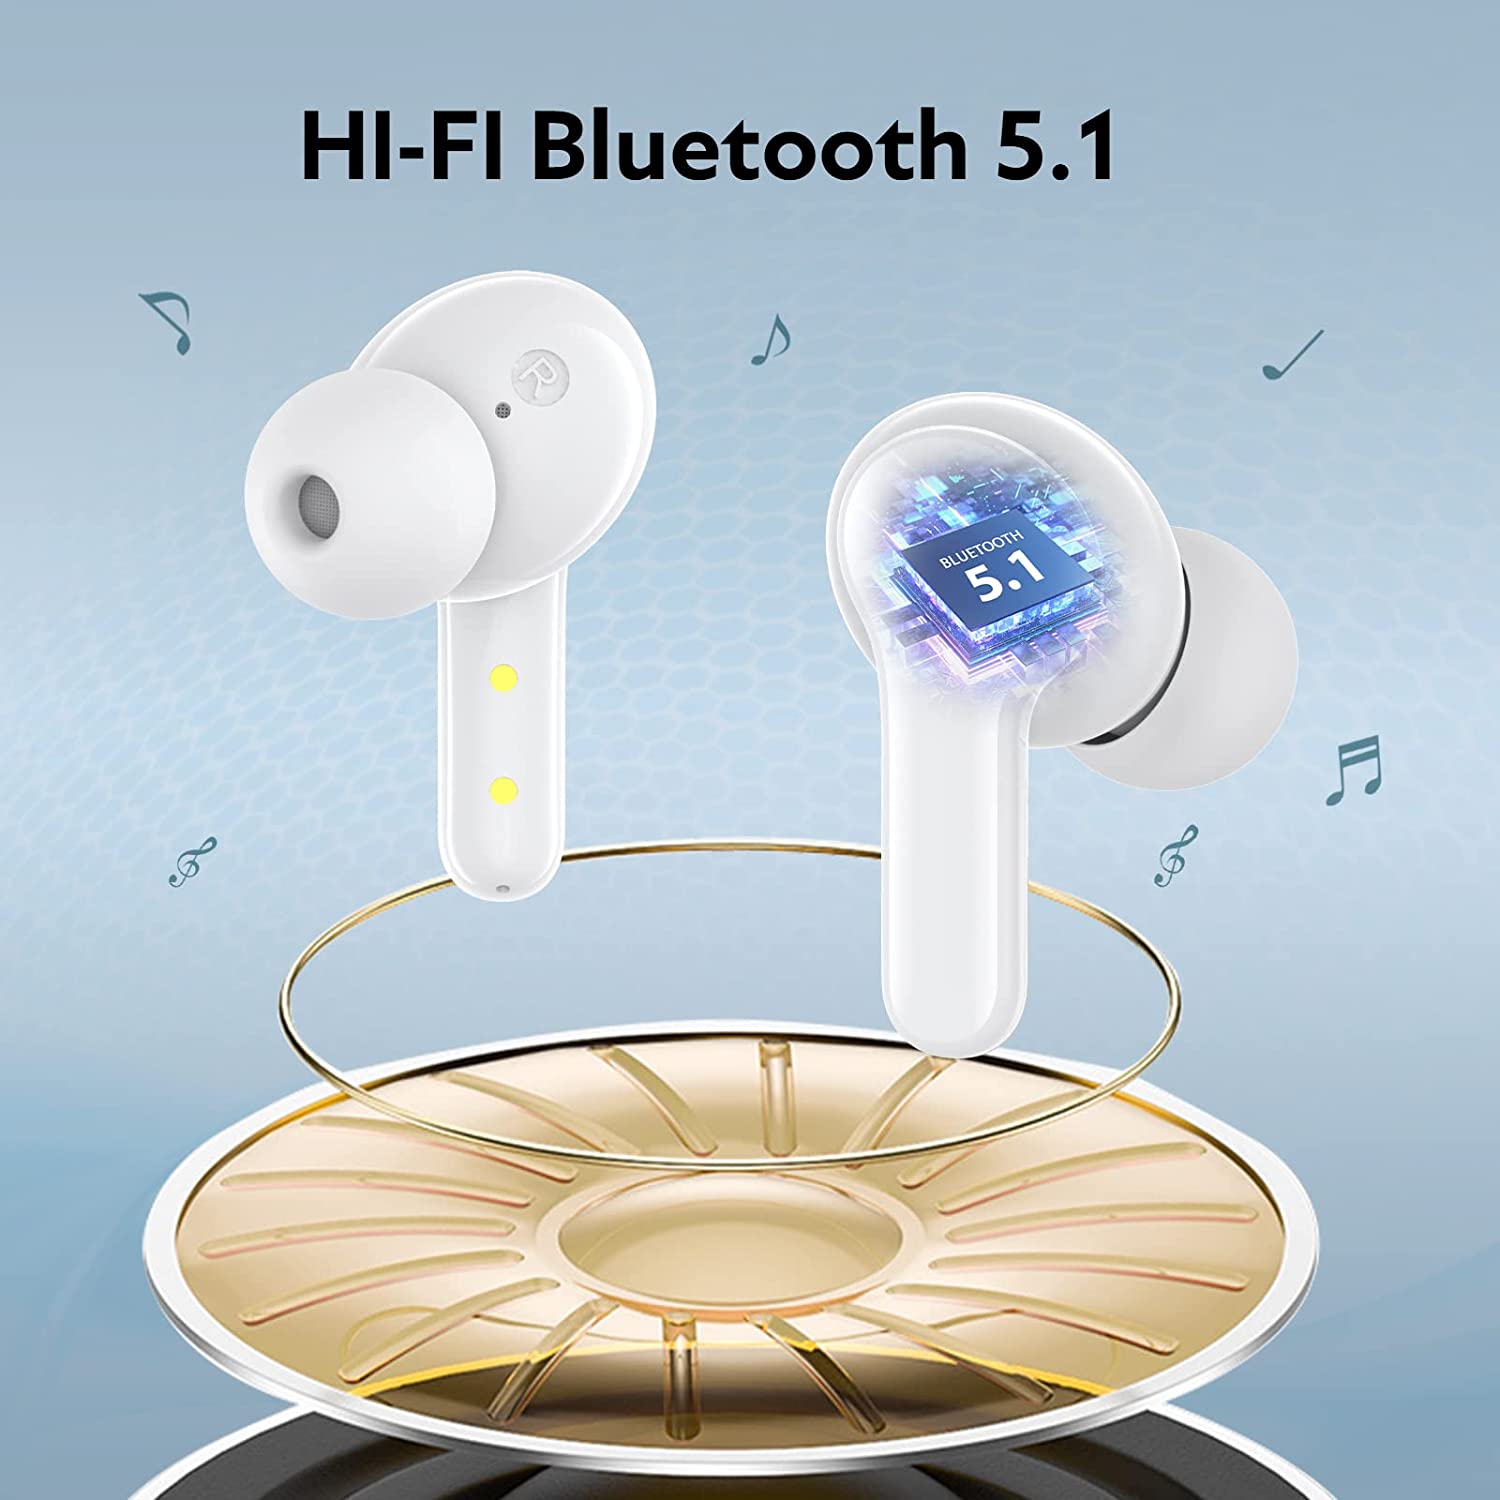 Écouteurs QCY T13 ANC avec suppression active du bruit Niveaux ANC réglables Mode de transparence et paramètres d'égalisation Bluetooth 5.3 IPX5 étanche - Blanc